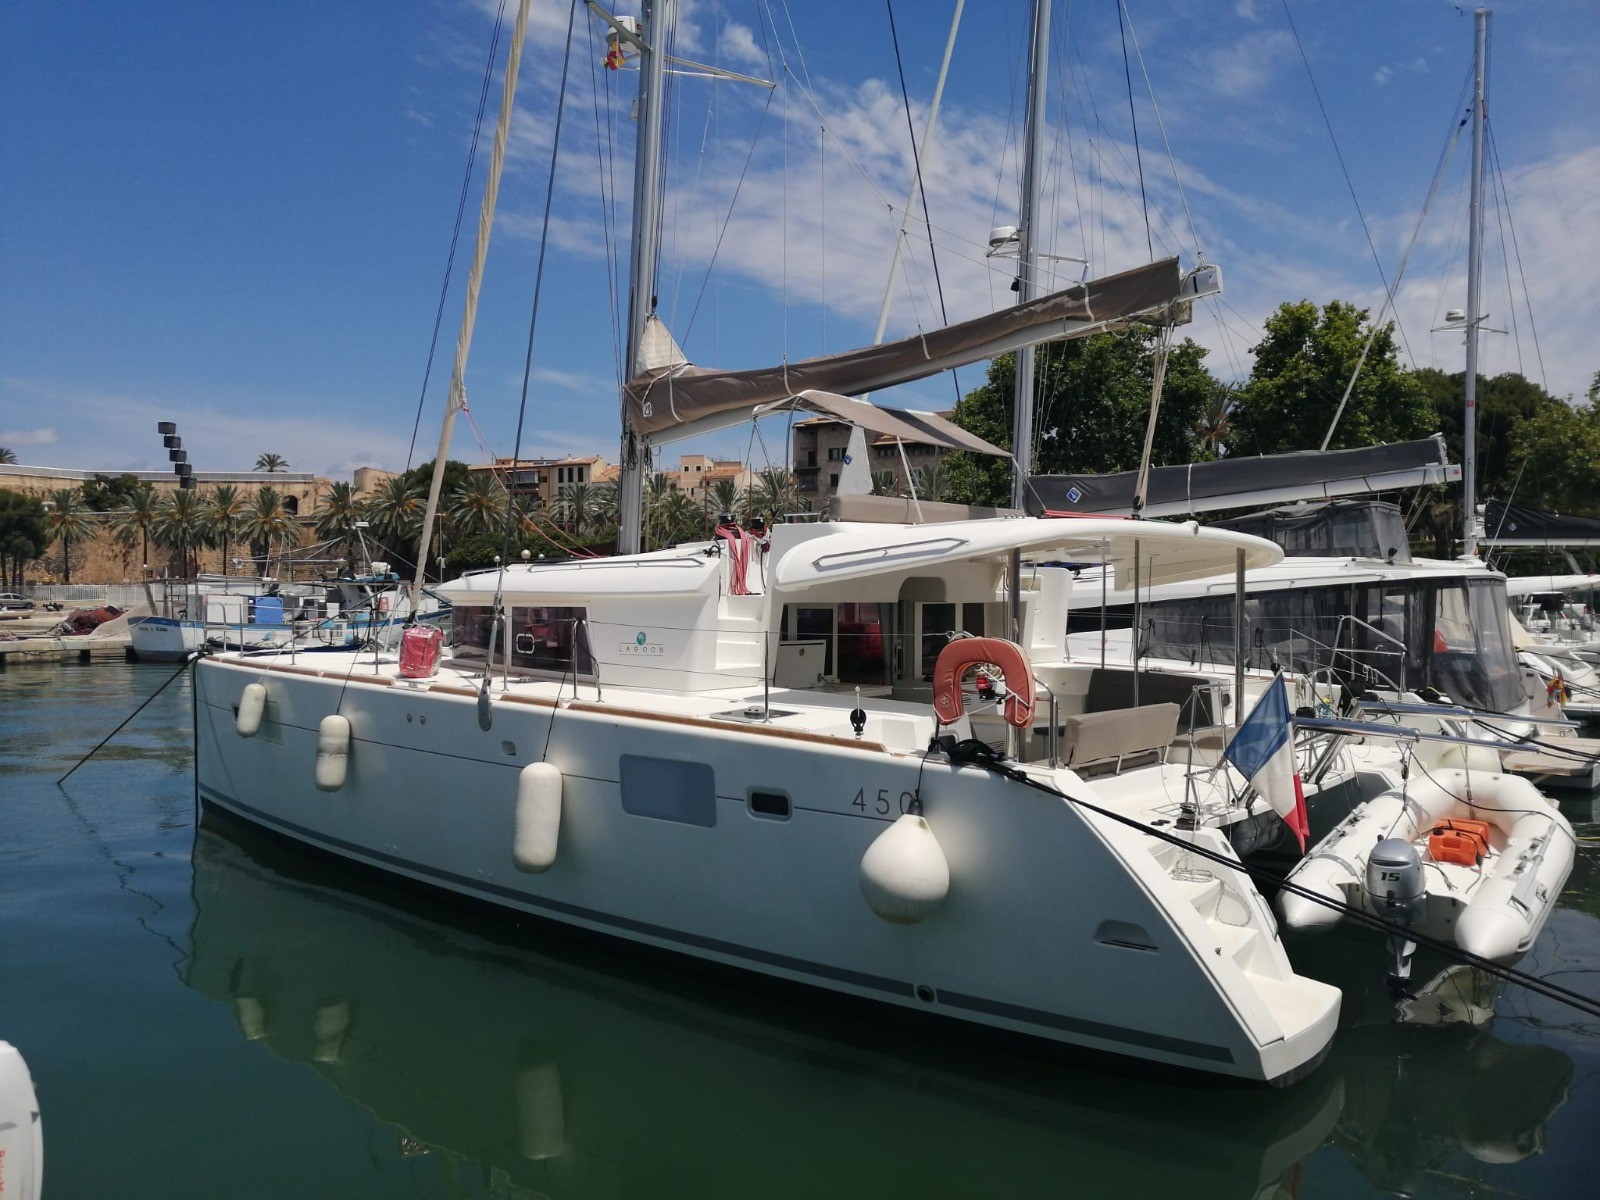 Catamarán EN CHARTER, de la marca Lagoon modelo 450 Flybridge y del año 2015, disponible en Muelle de la Lonja Palma Mallorca España